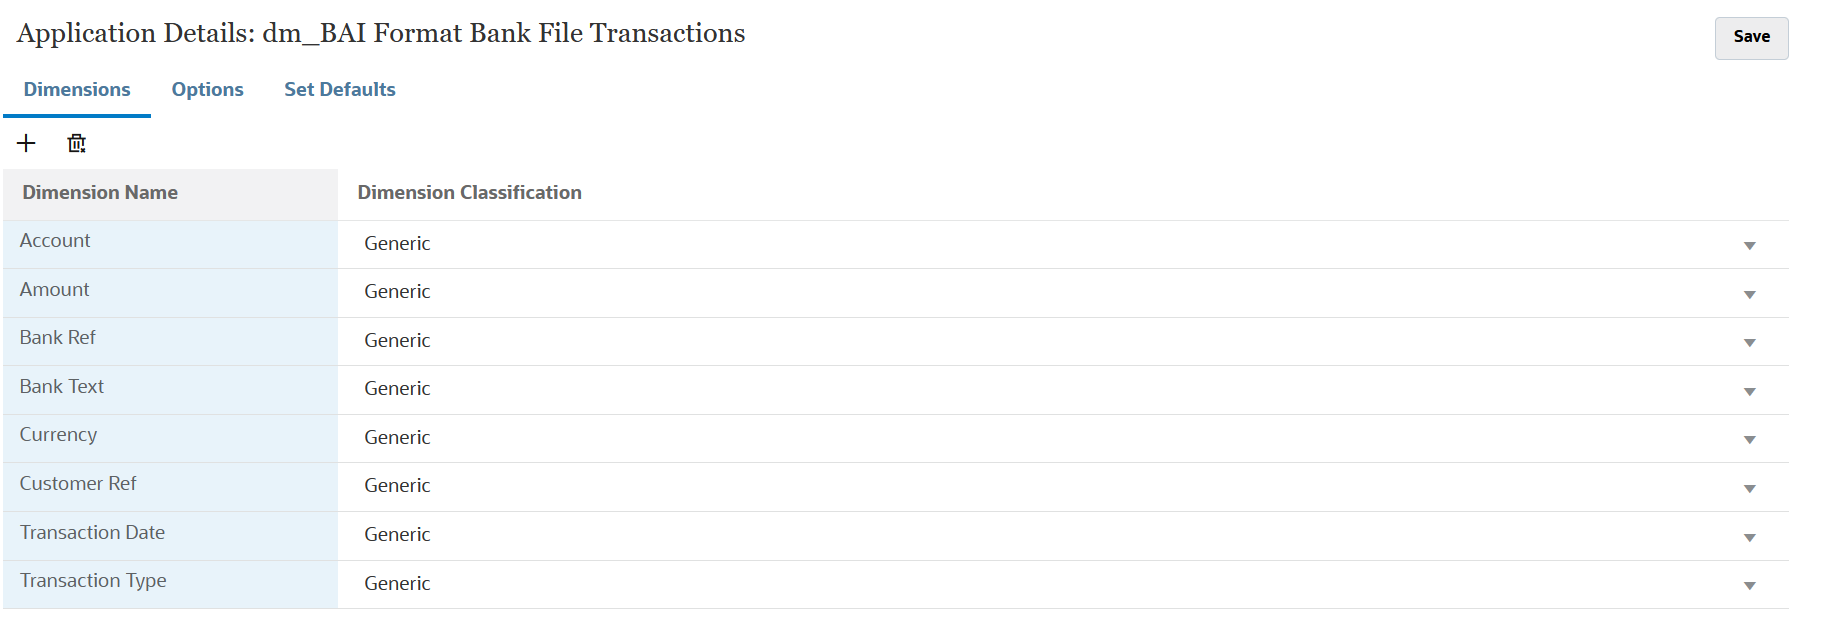 Immagine che mostra i dettagli delle dimensioni per le transazioni file bancario formato BAI